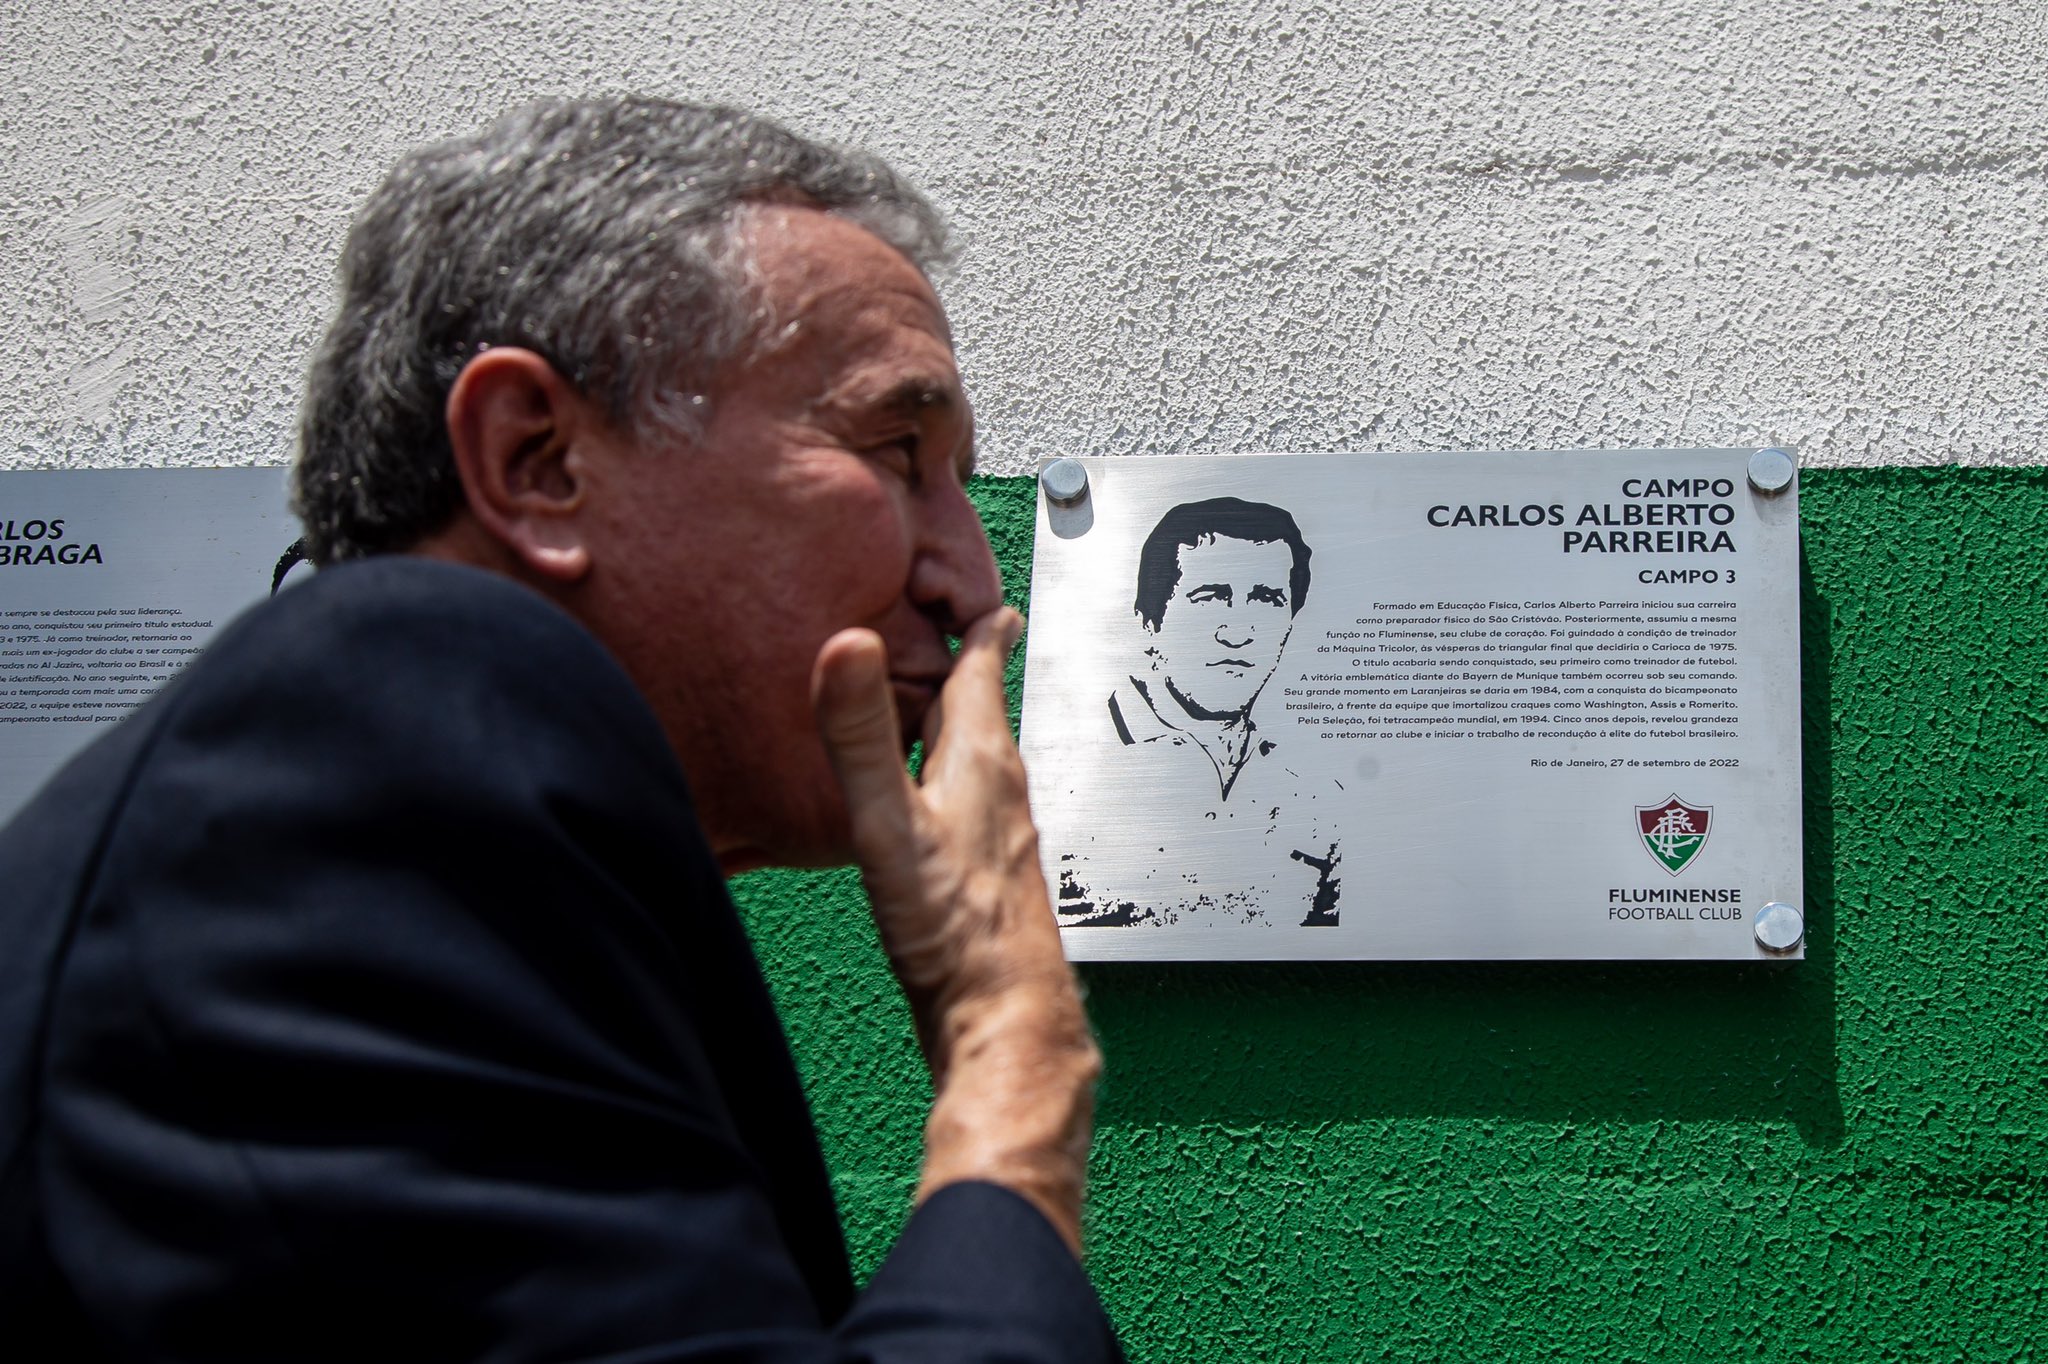 Bokep Belia - Fluminense homenageia Carlos Alberto Parreira e campo 3 do CT Carlos  Castilho recebe seu nome â€¢ SaudaÃ§Ãµes Tricolores